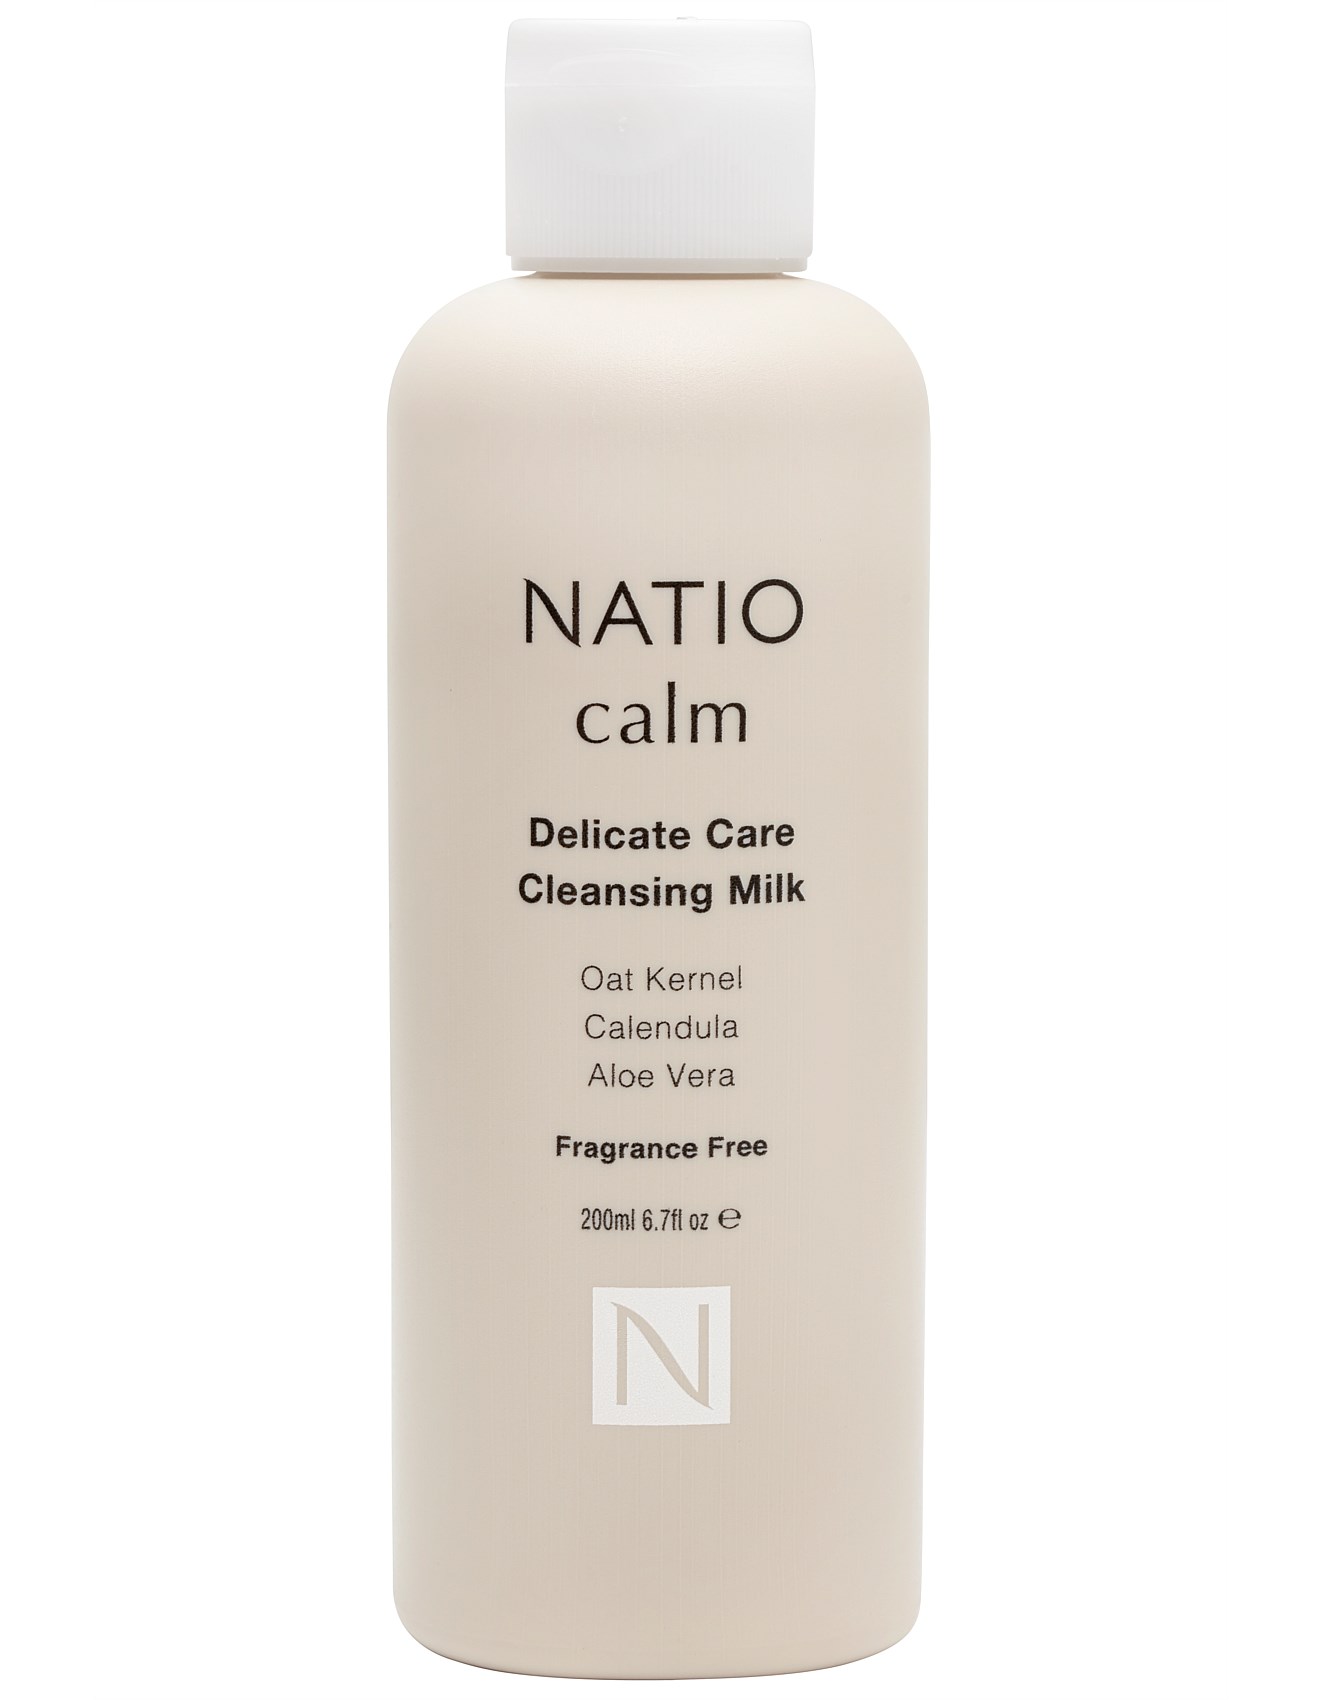 Natio Delicate Care Cleansing Milk 200ml